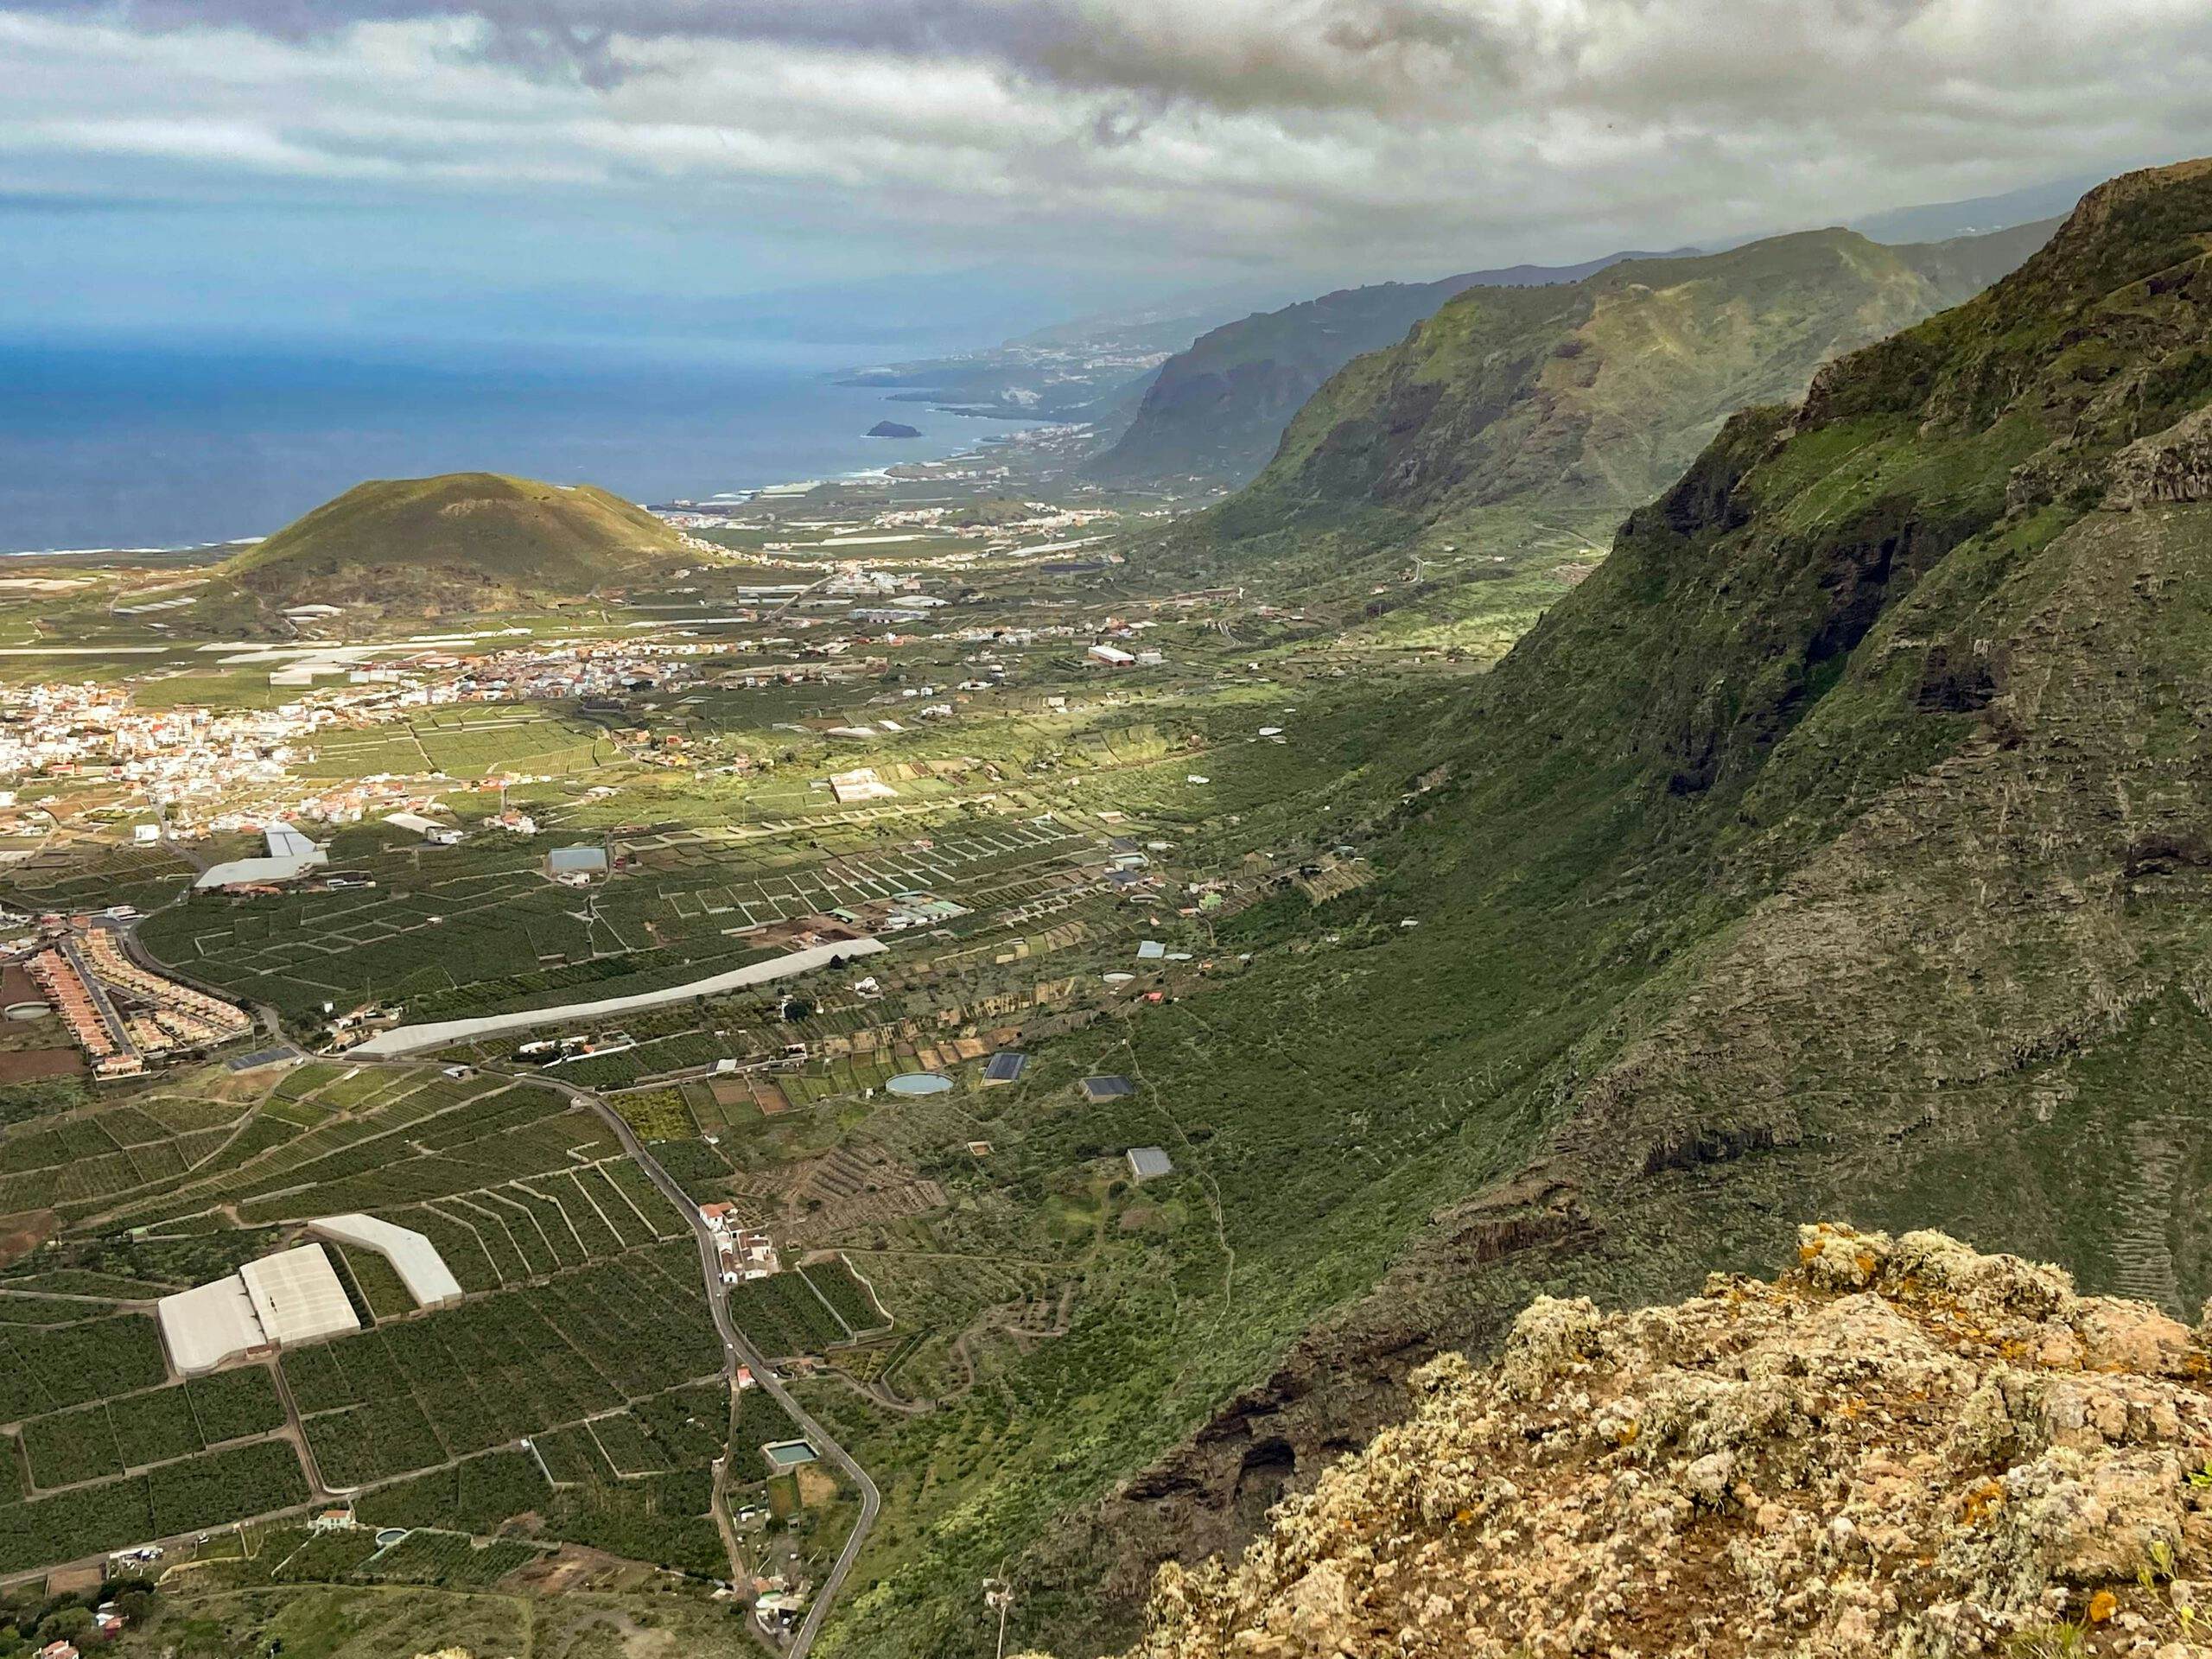 Vista desde el borde del acantilado sobre la costa norte de Tenerife